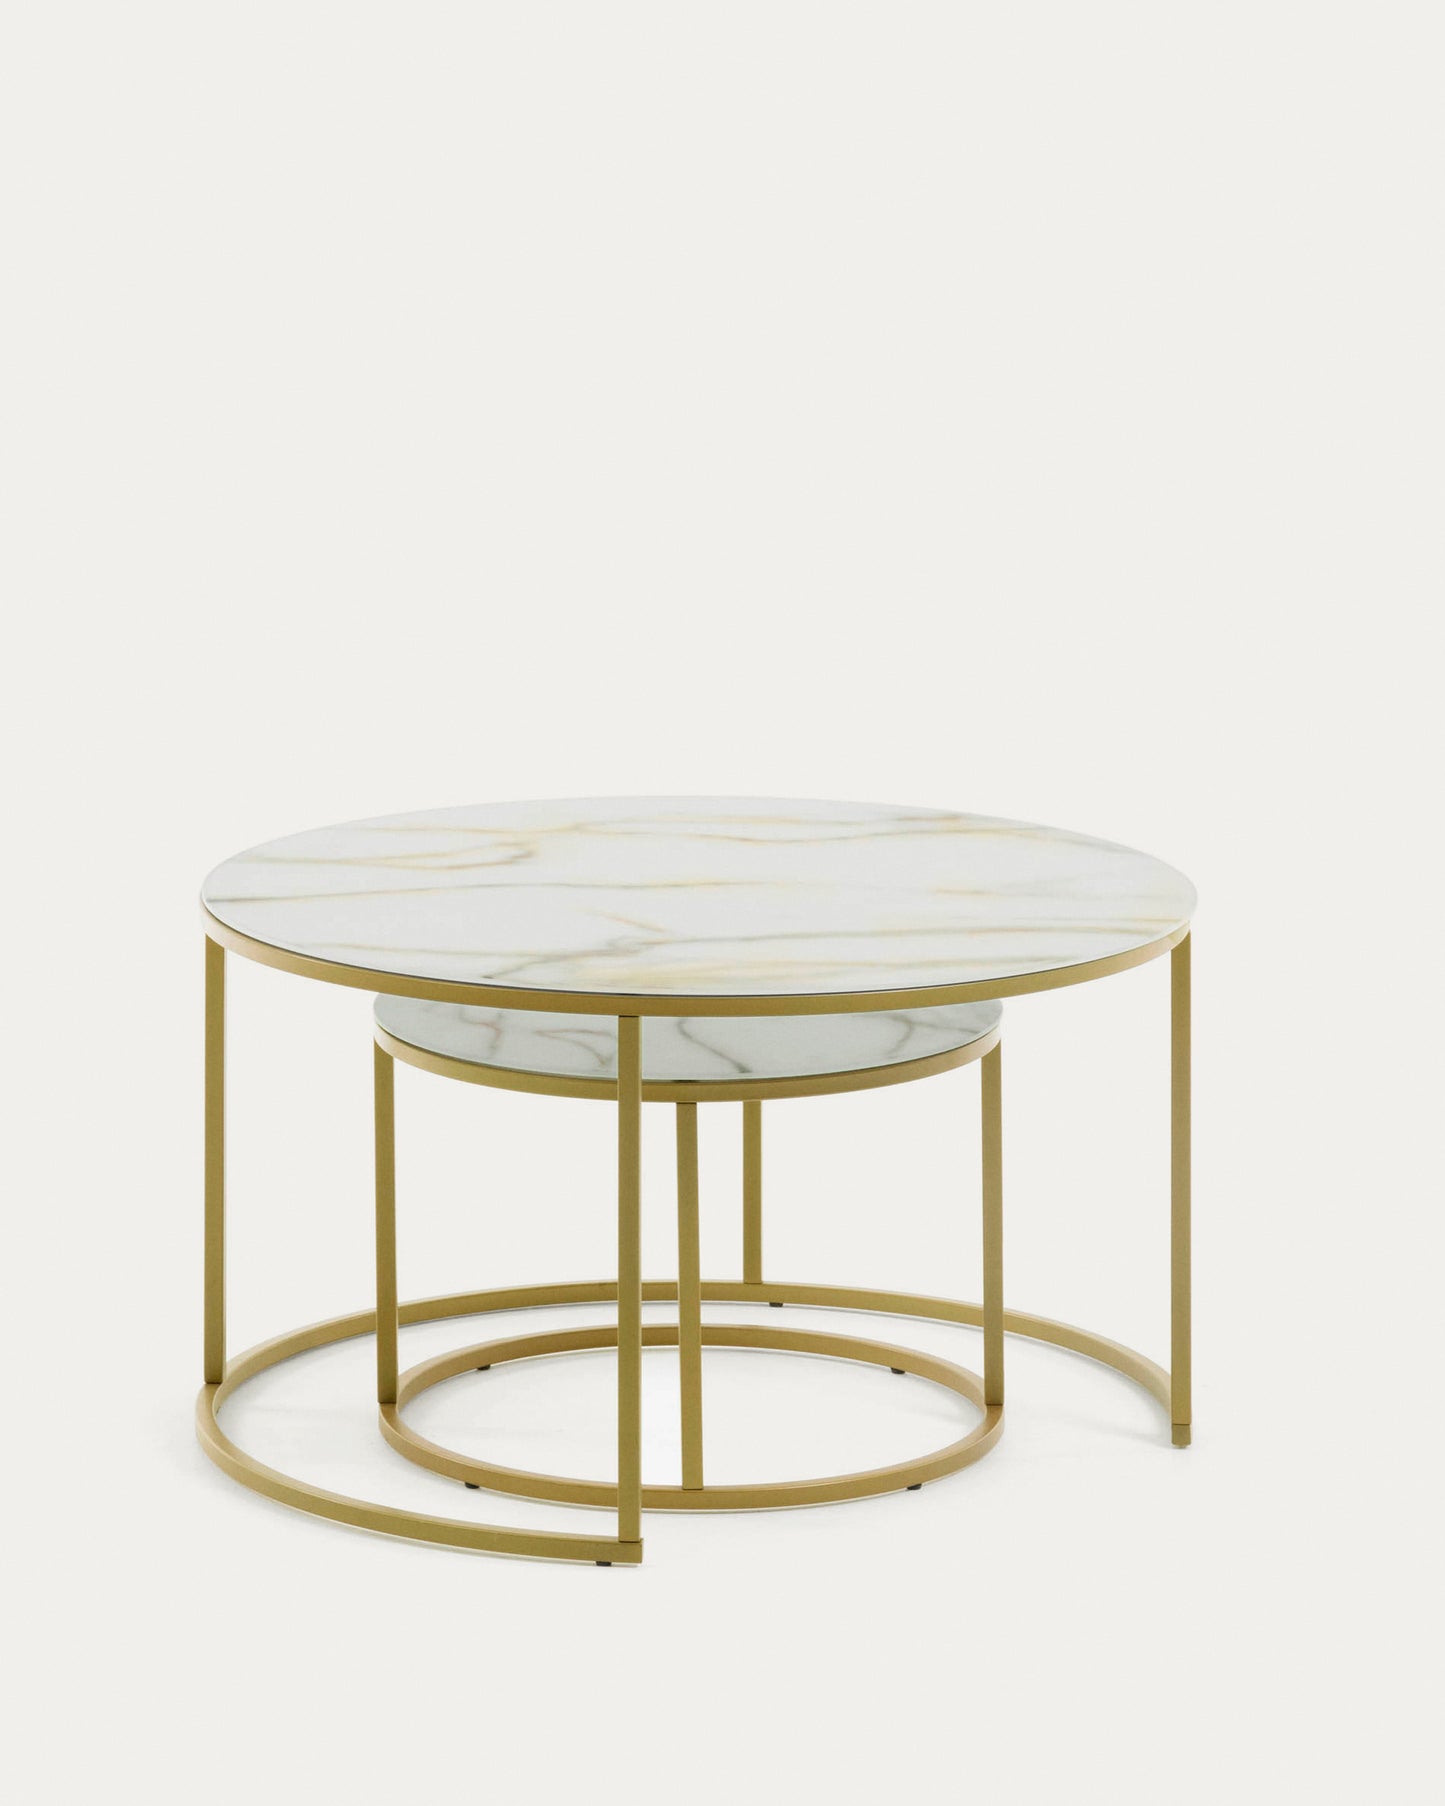 Set Leonor de 2 mesas auxiliares de cristal blanco y acero acabado dorado Ø 80 cm/Ø 50 cm